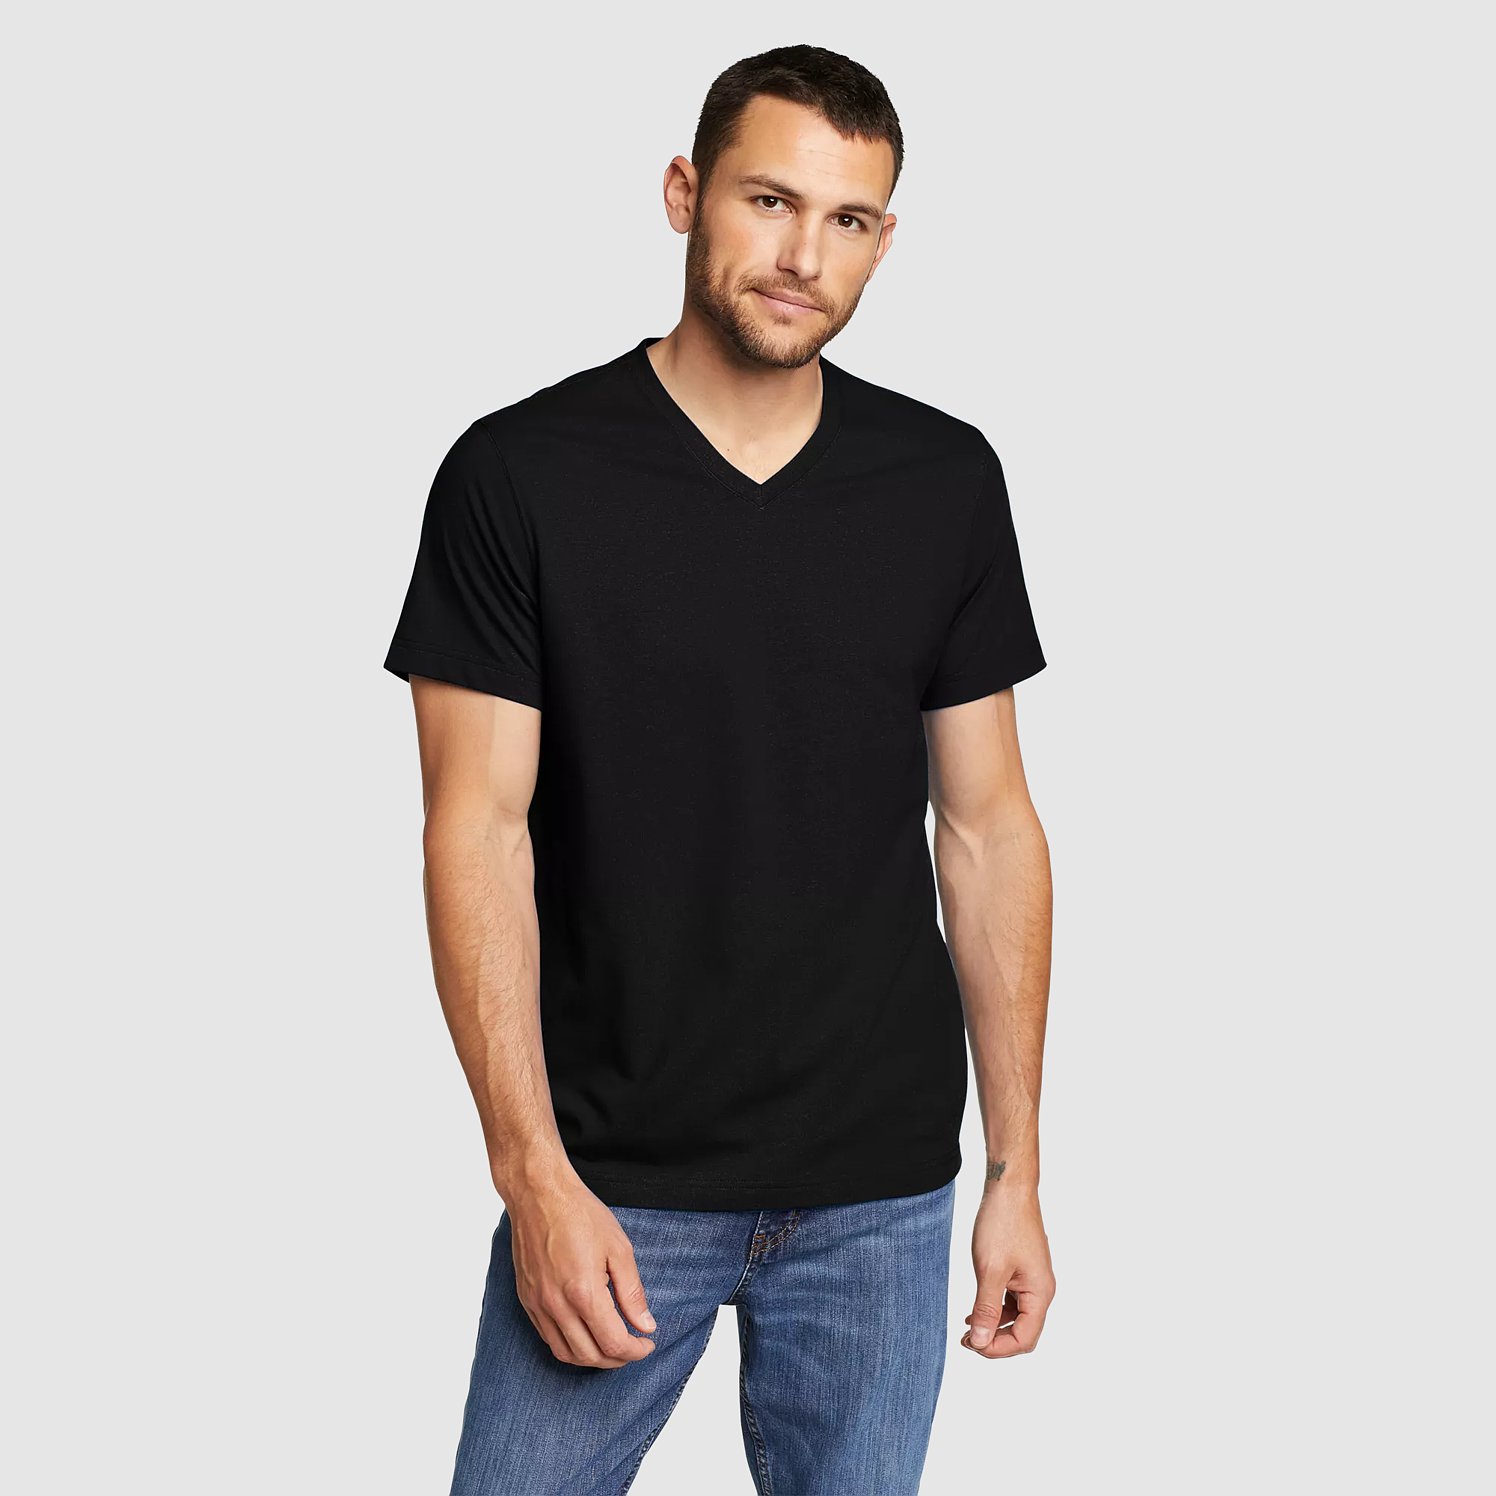 Eddie Bauer Men's Classic Wash 100% Cotton Short-Sleeve V-Neck T-Shirt - Midnight Navy - Size M